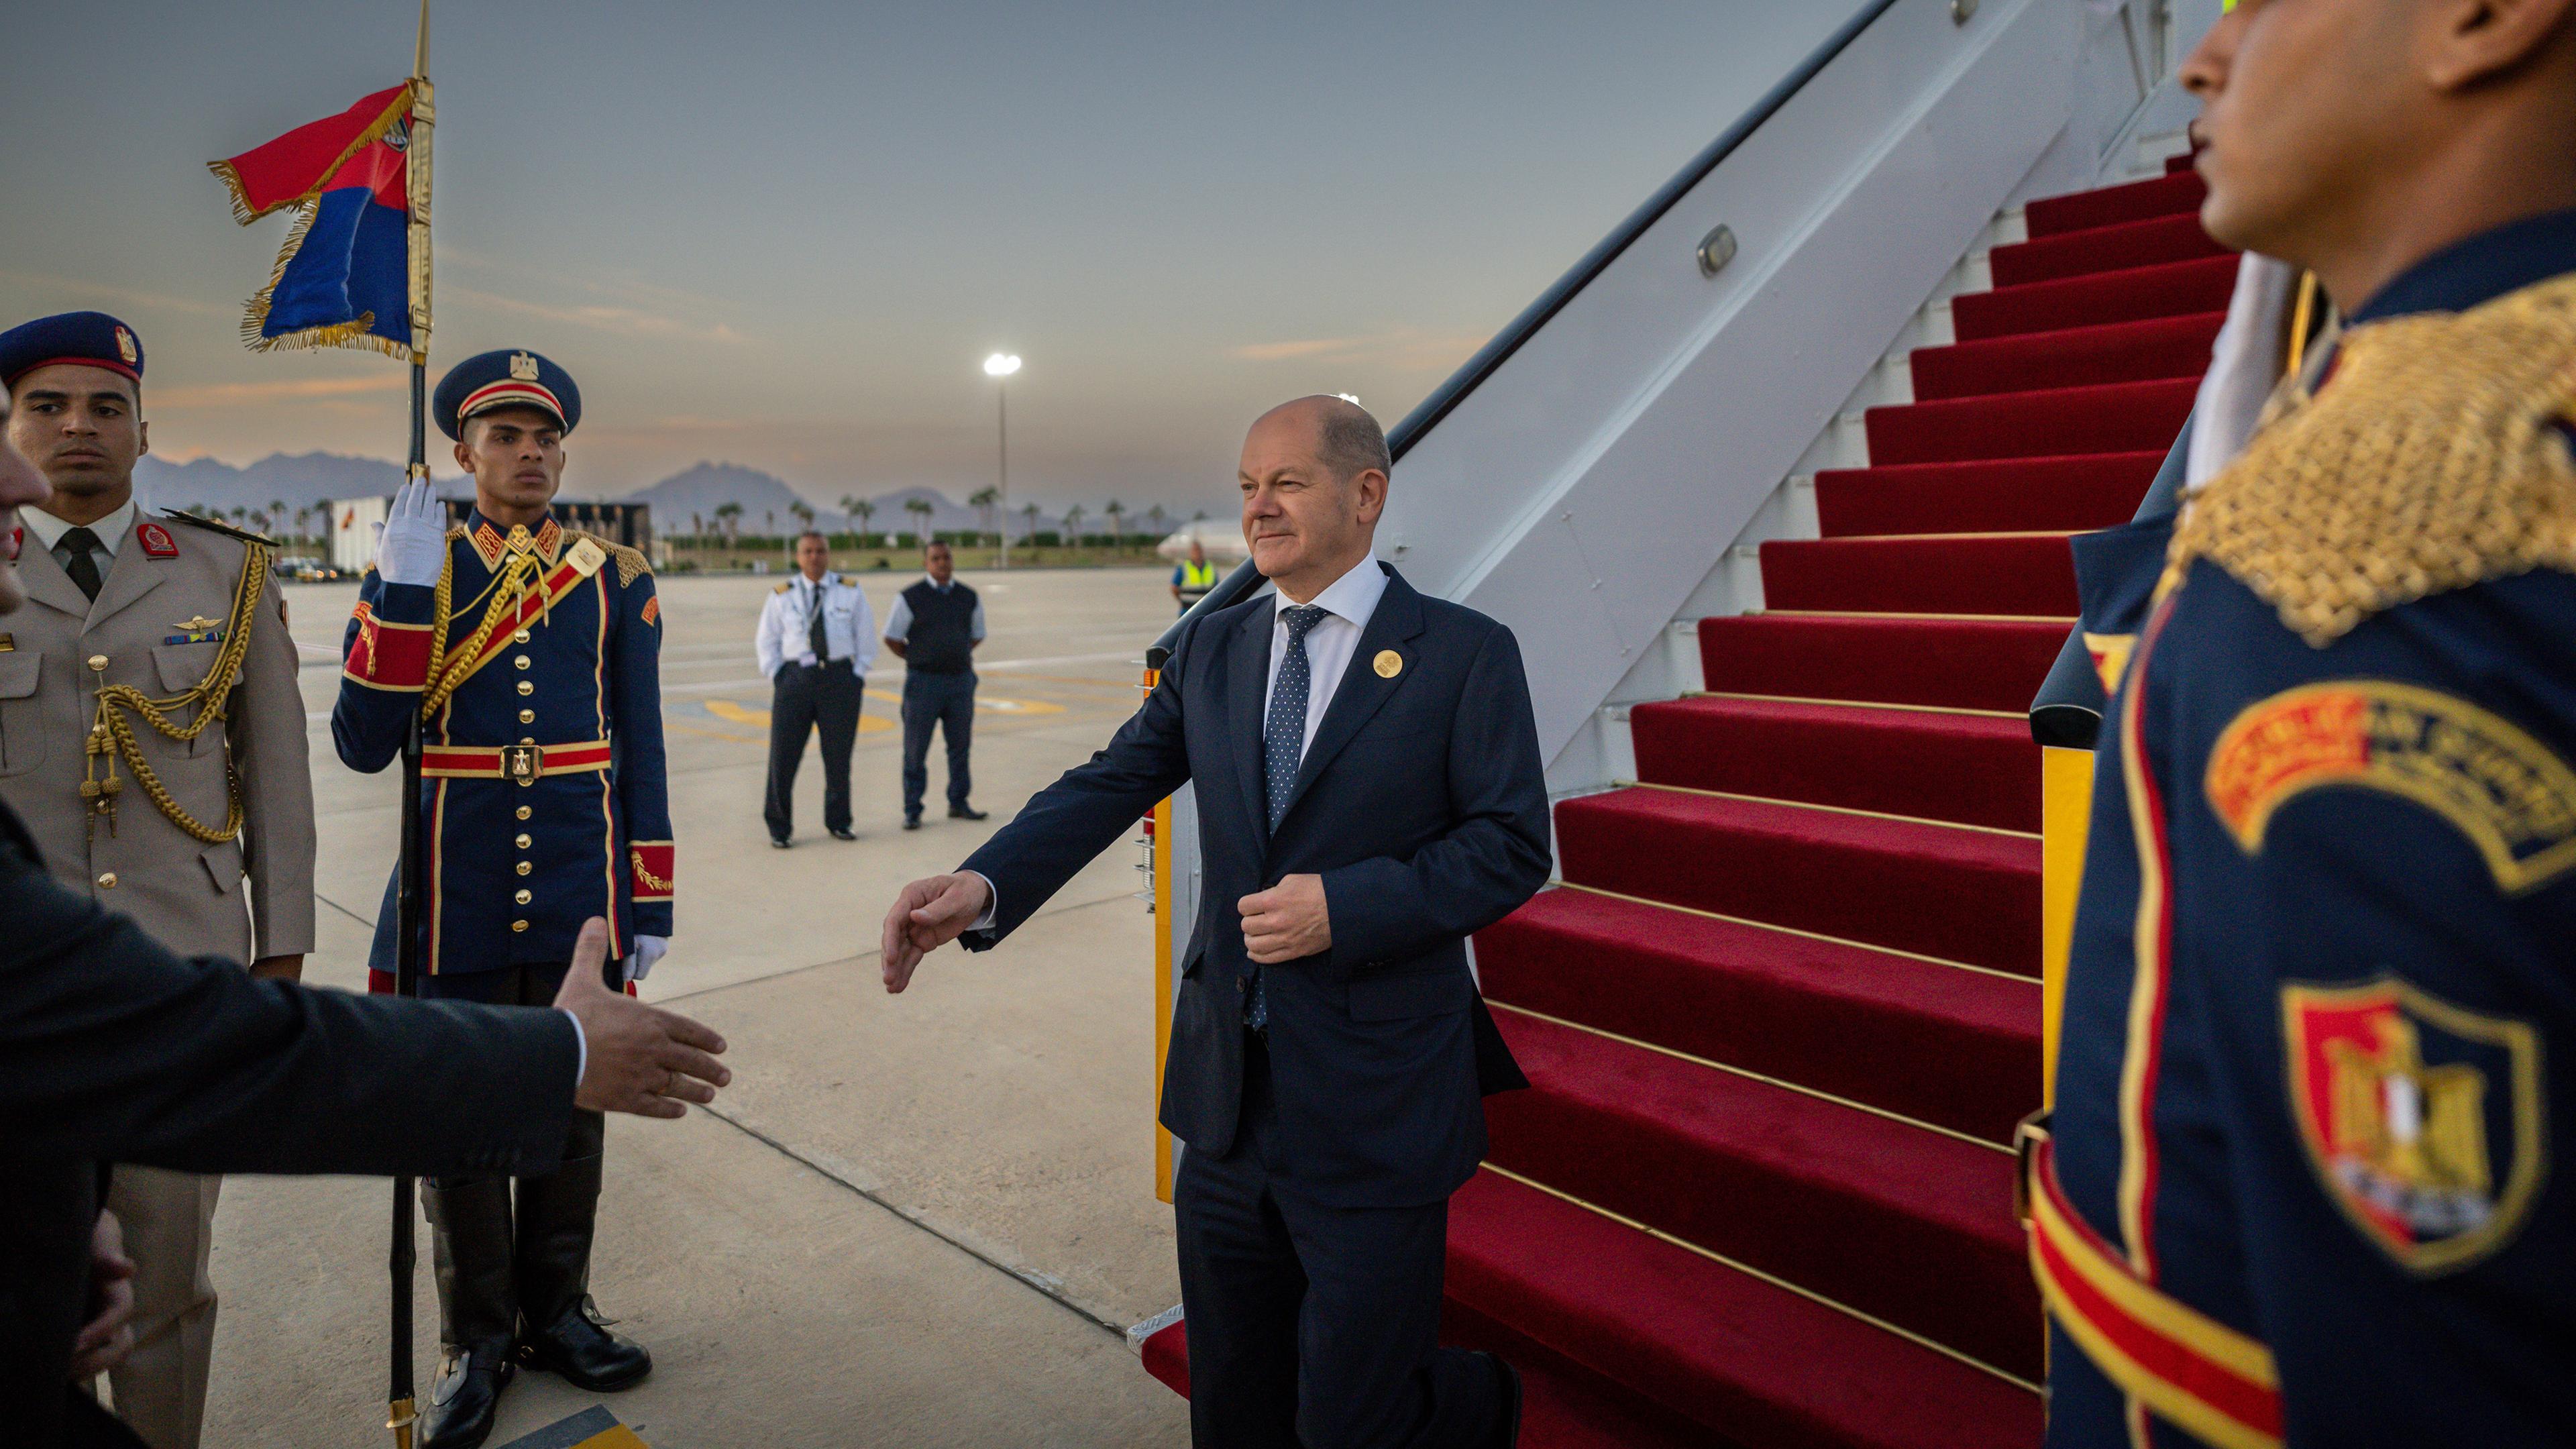 Ägypten, Scharm El Scheich: Bundeskanzler Olaf Scholz (SPD) wird bei seiner Ankunft auf dem Flughafen von einem Protokollmitarbeiter begrüßt.